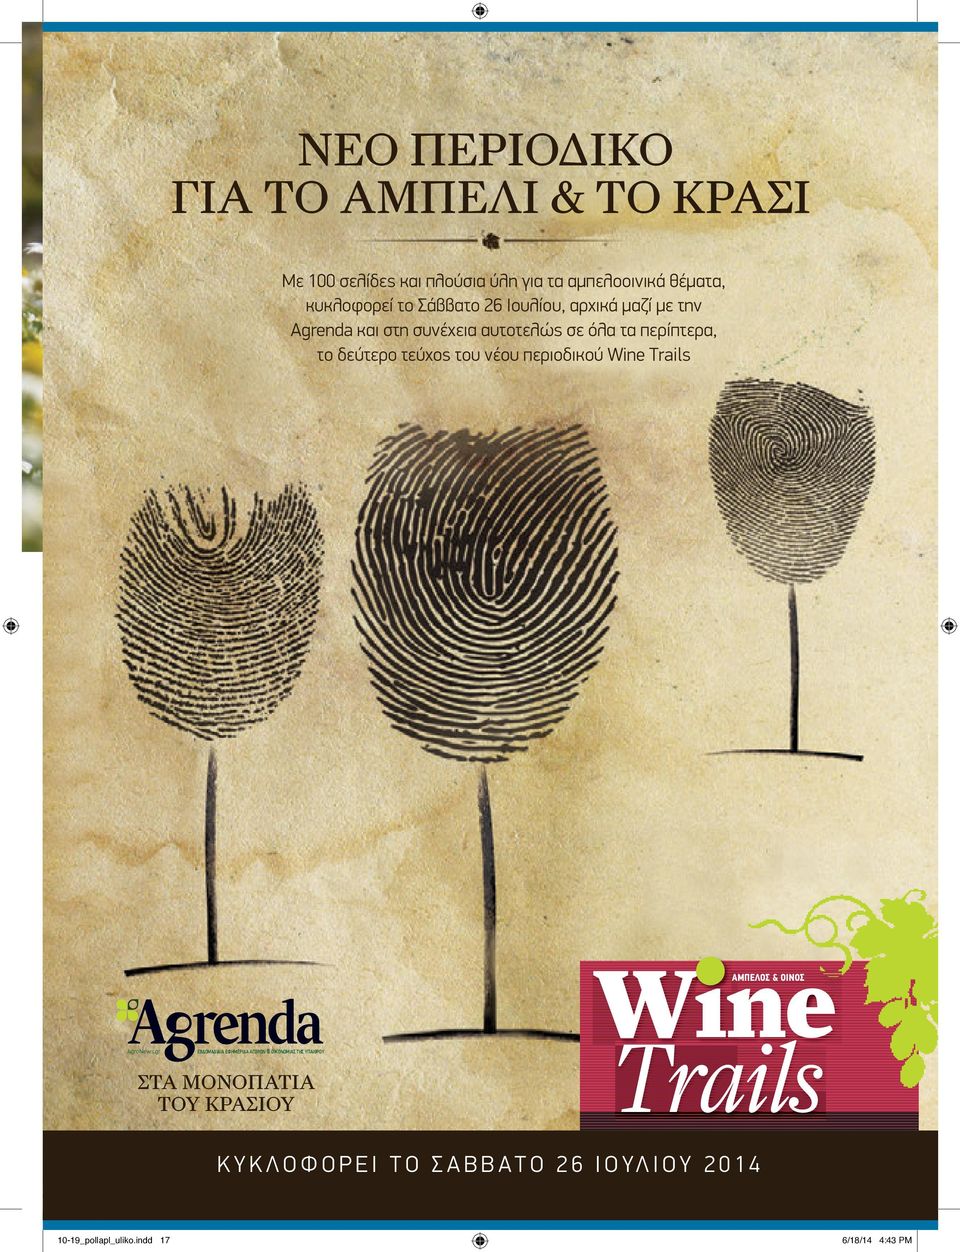 τεύχος του νέου περιοδικού Wine Trails ΝΤΖΑΝΗΣ ΑΜΠΕΛΟΣ & ΟΙΝΟΣ AgroNews.